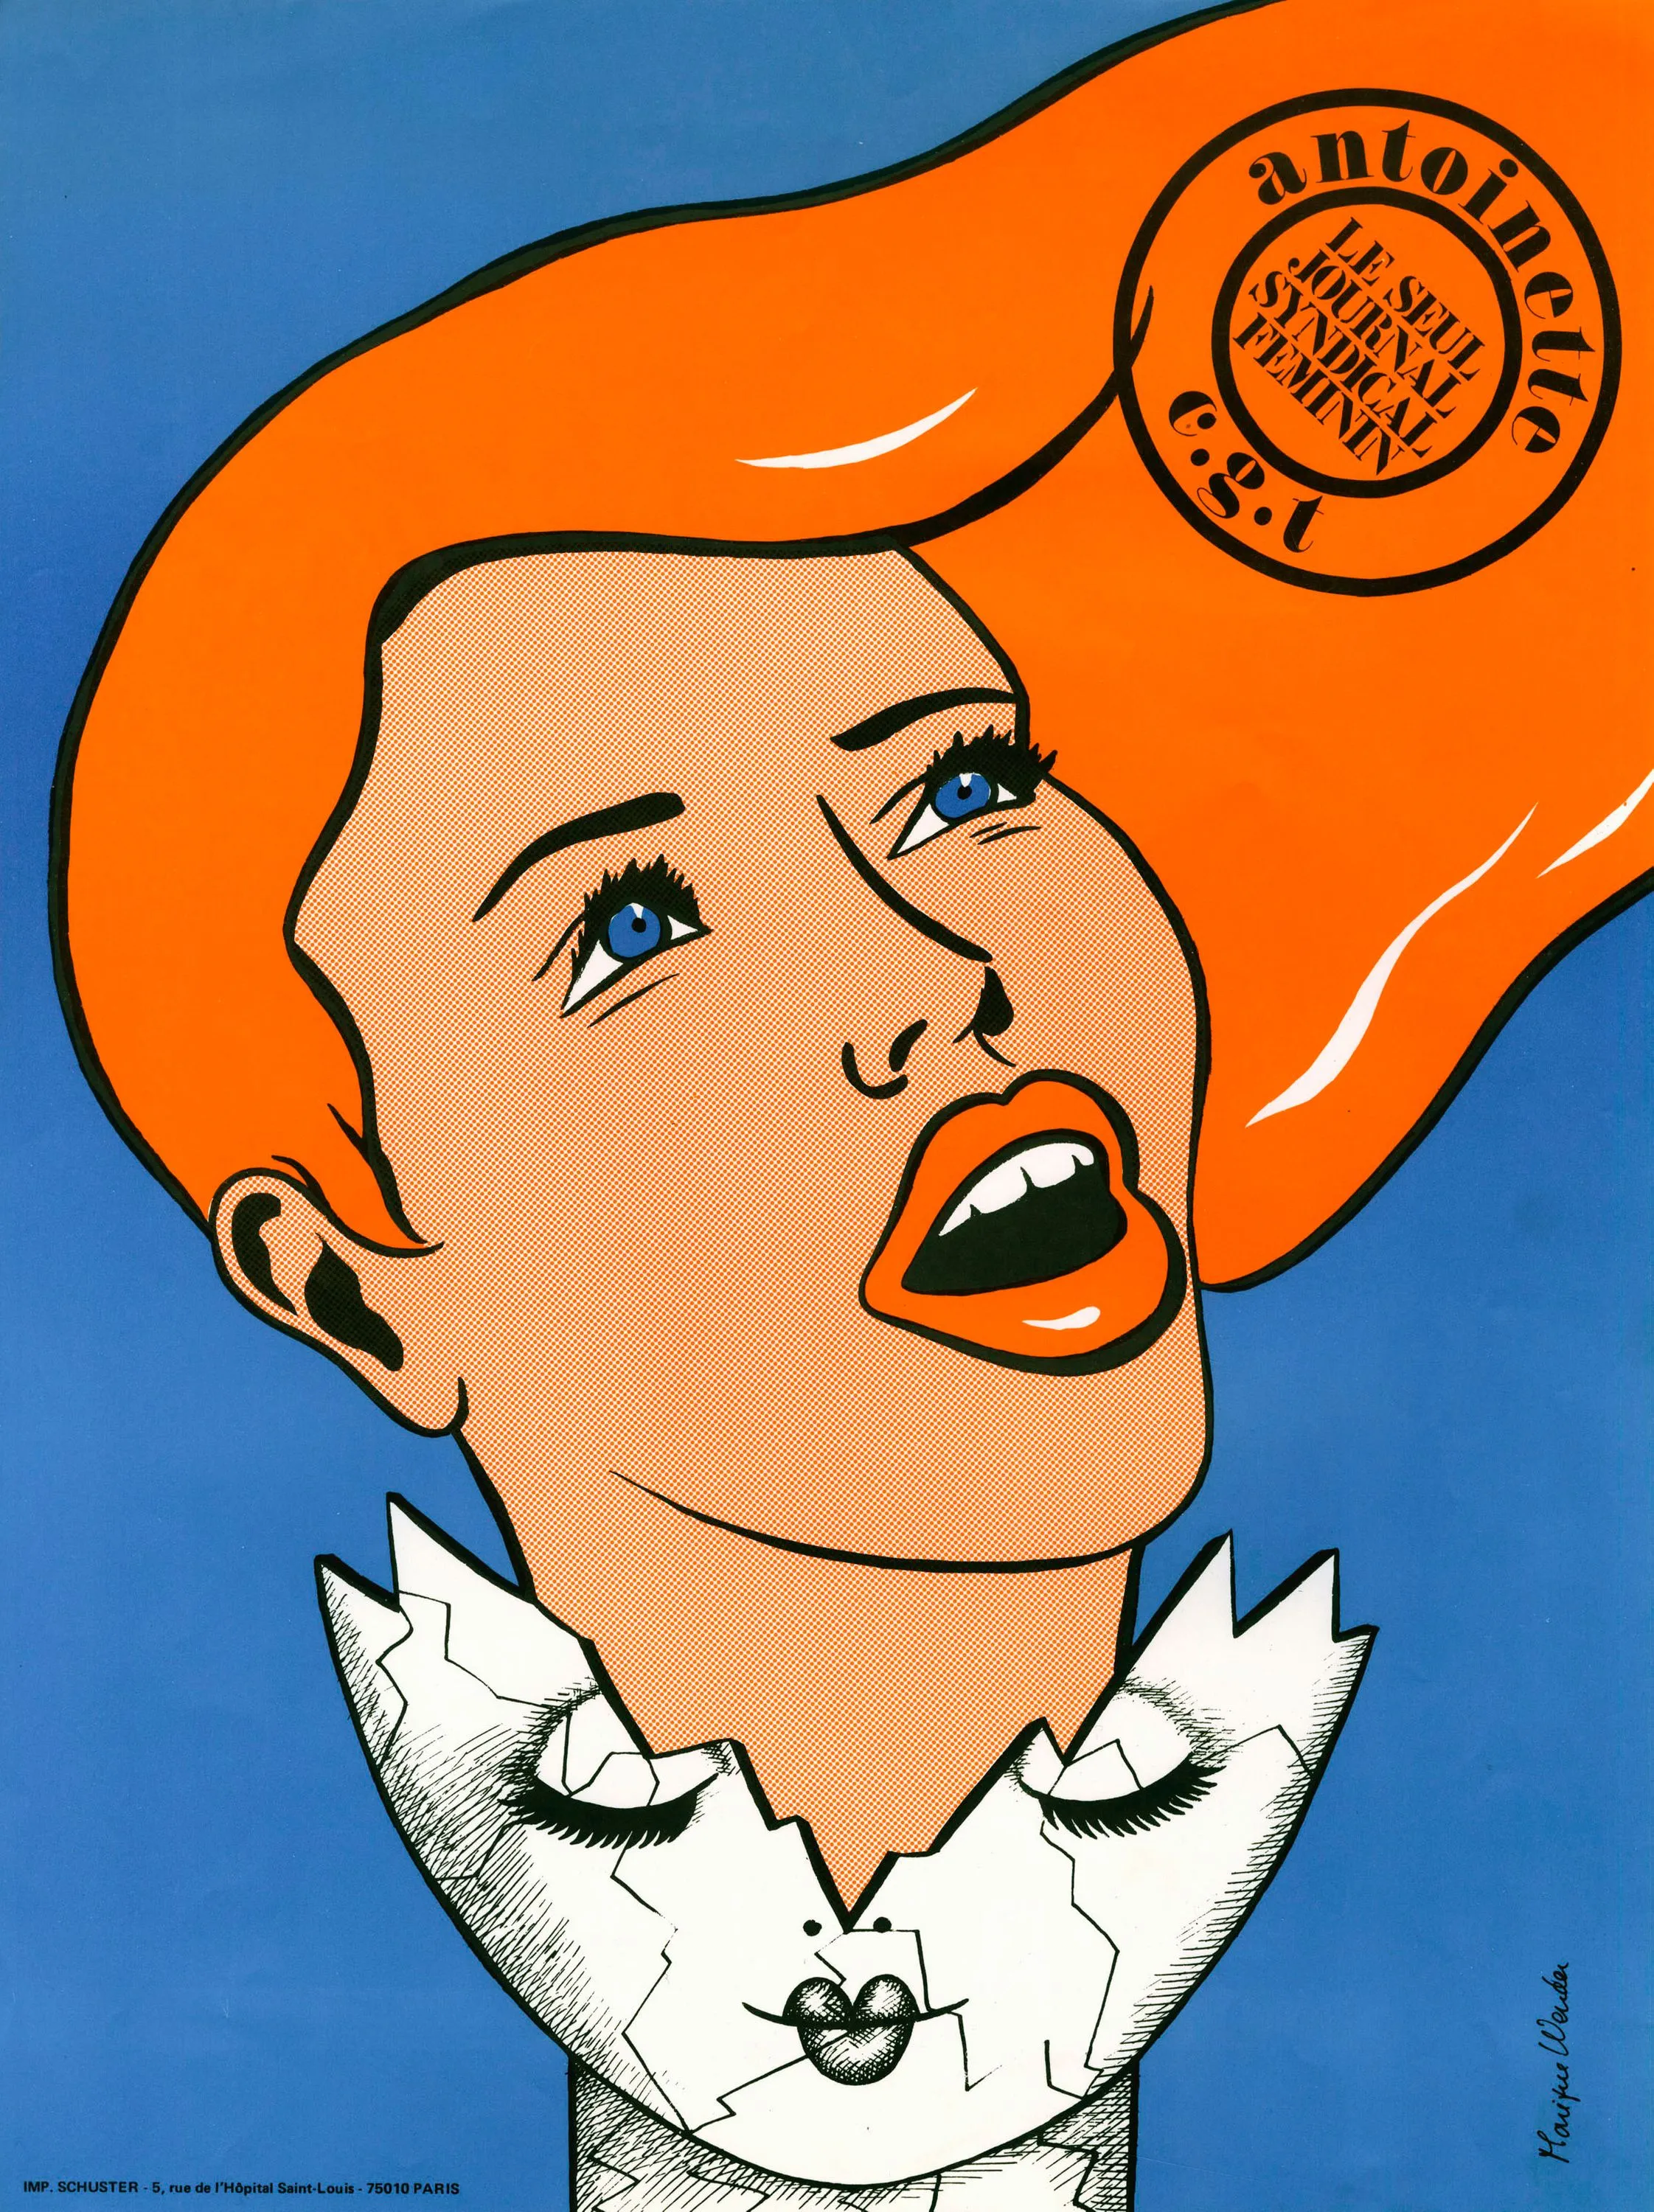 Monique Wender, affiche pour
Antoinette, « le seul journal syndical
féminin », 1977